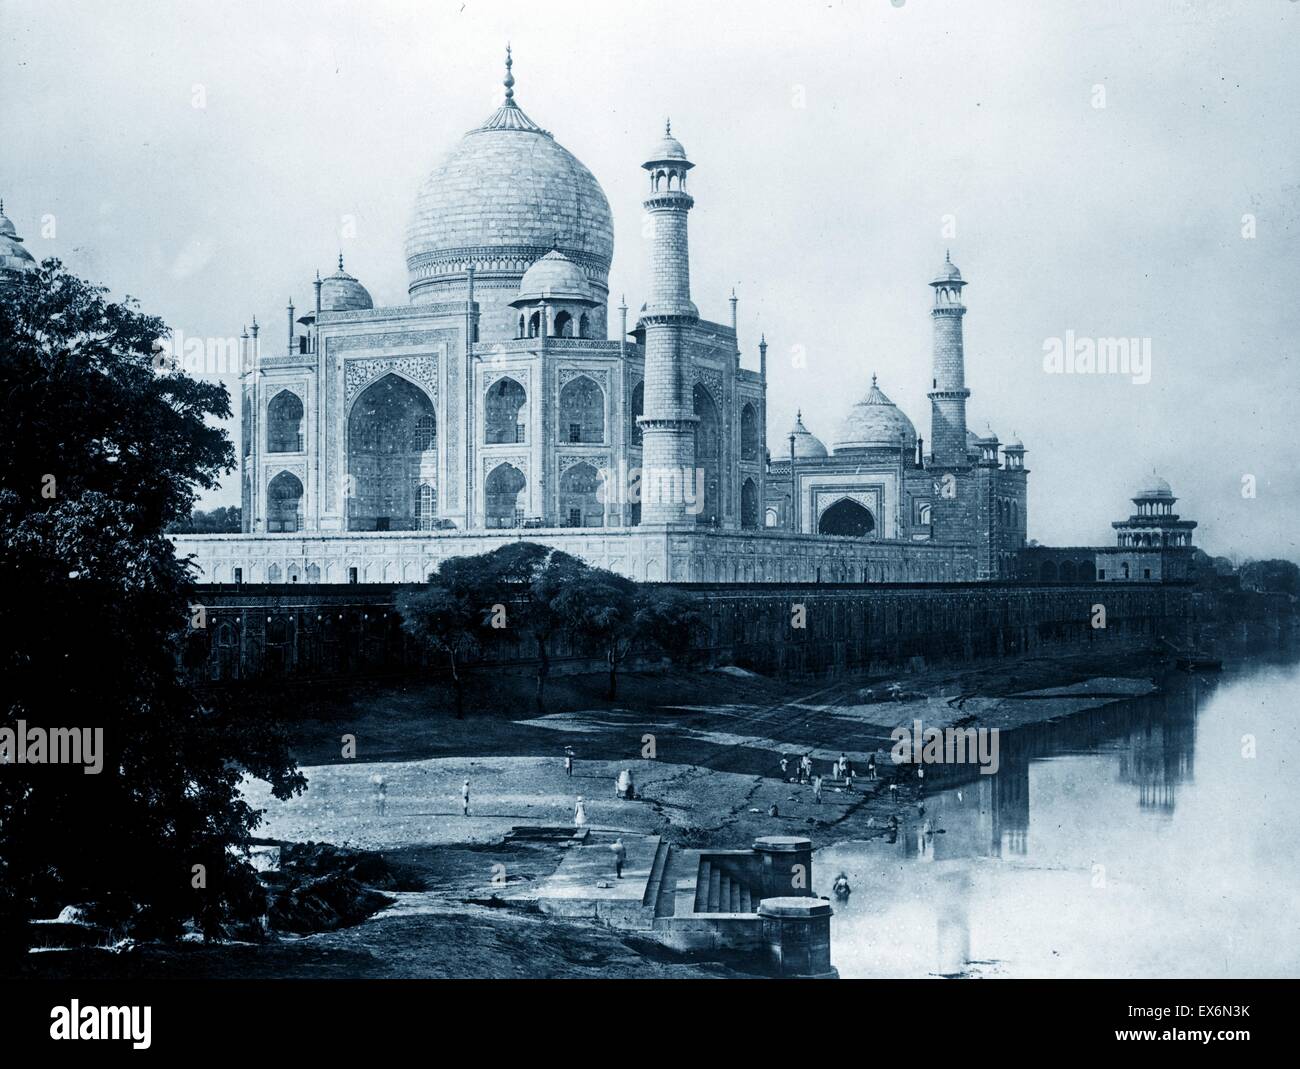 Photo du Taj Mahal, Agra, Inde. Datée 1910 Banque D'Images